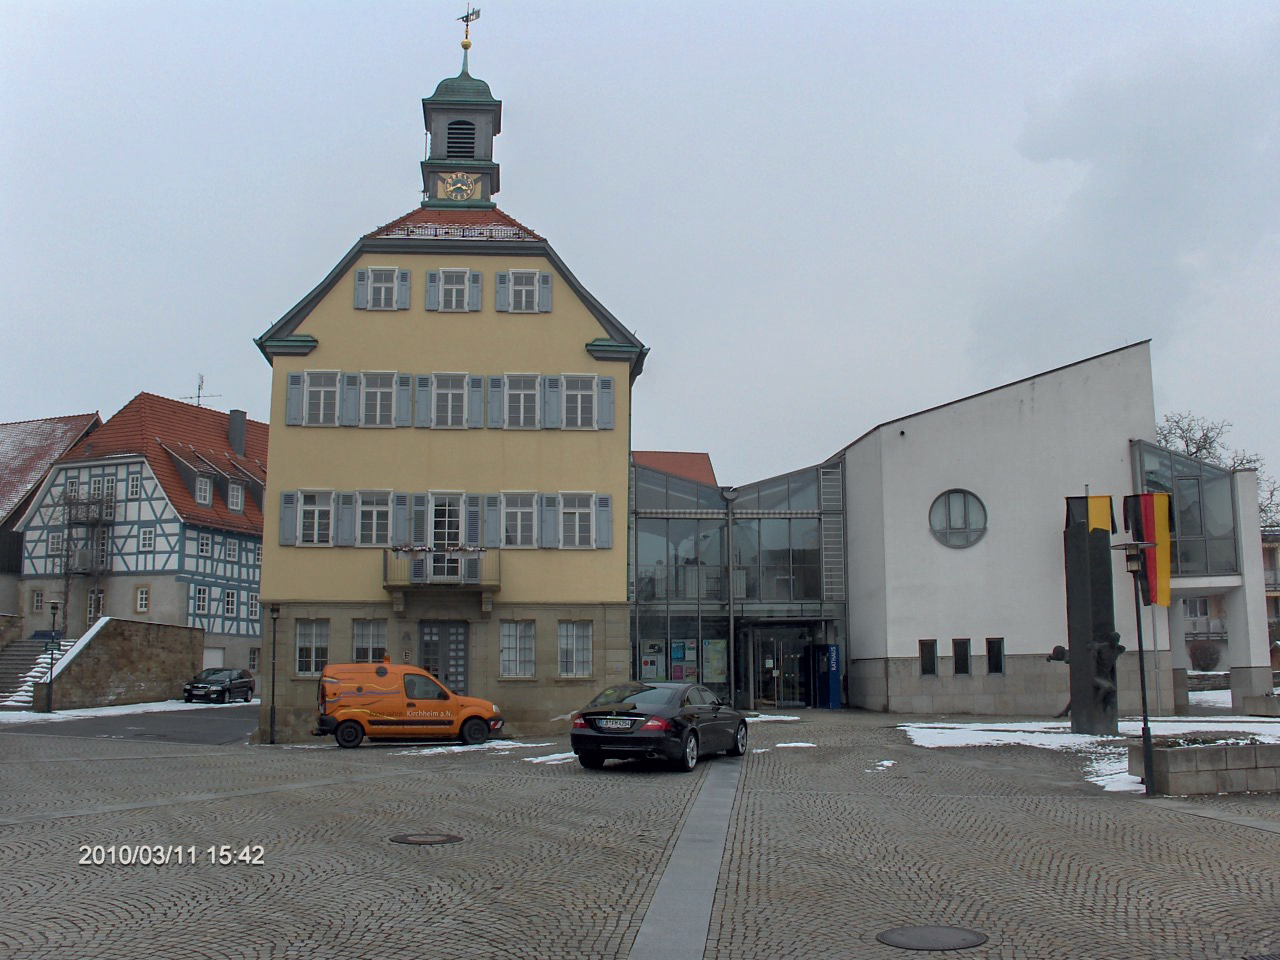 Rathaus Kirchheim am Neckar